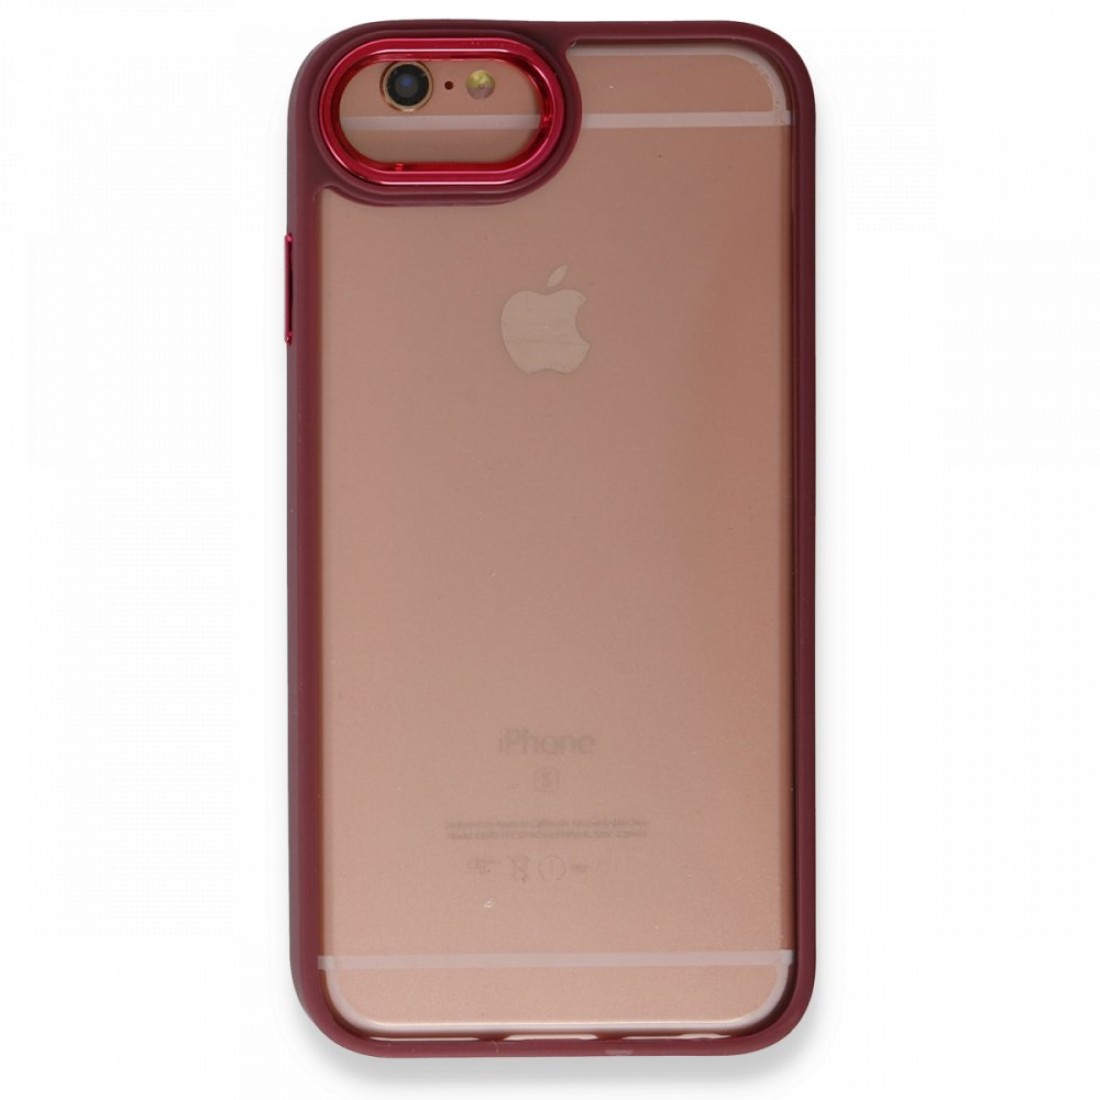 Apple iPhone 6 Kılıf Dora Kapak - Kırmızı